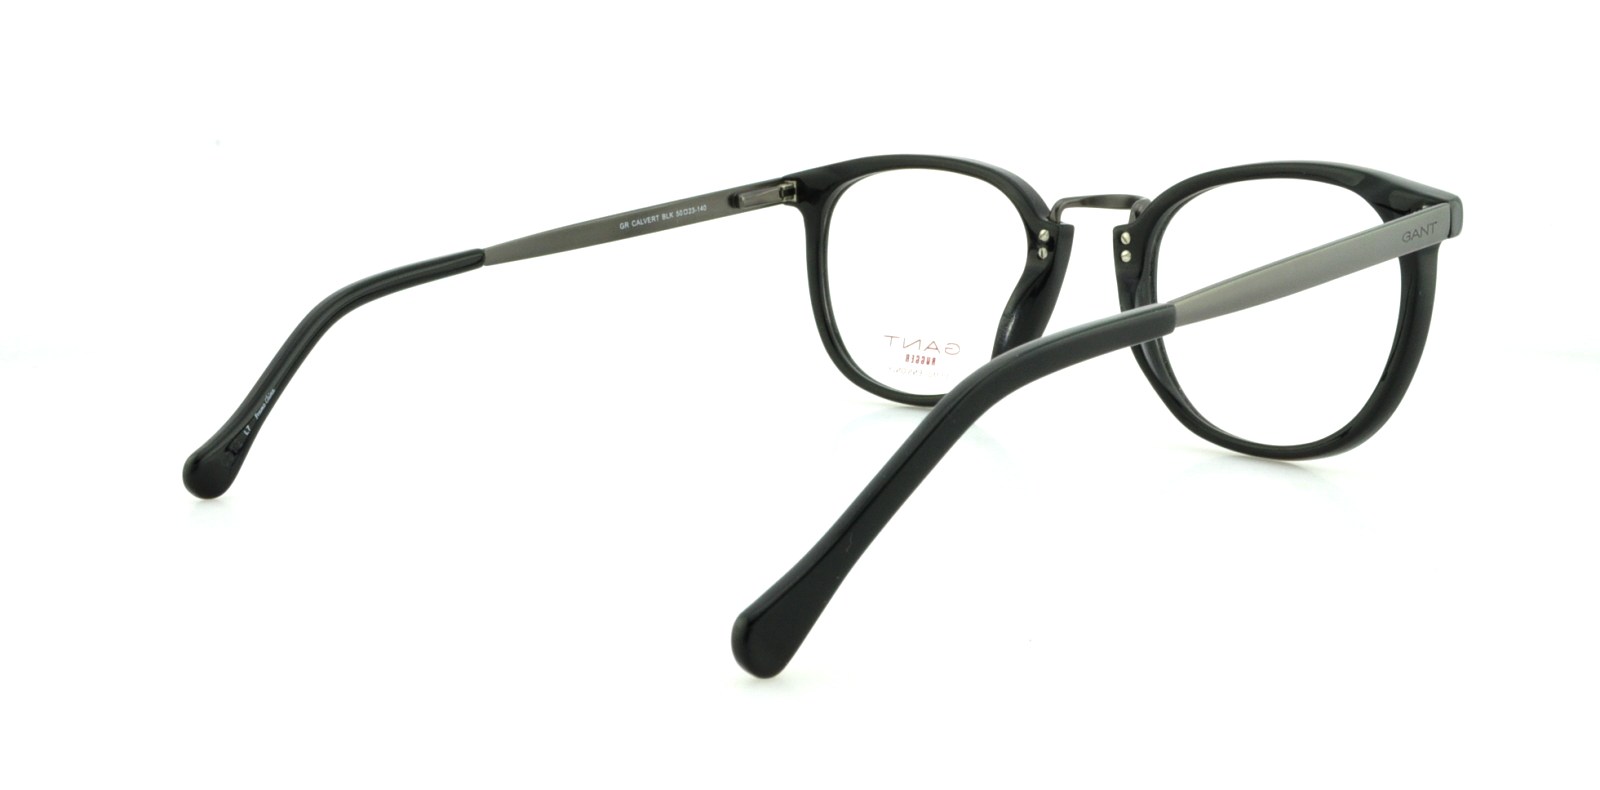 Designer Frames Outlet. Gant Rugger Eyeglasses GR CALVERT